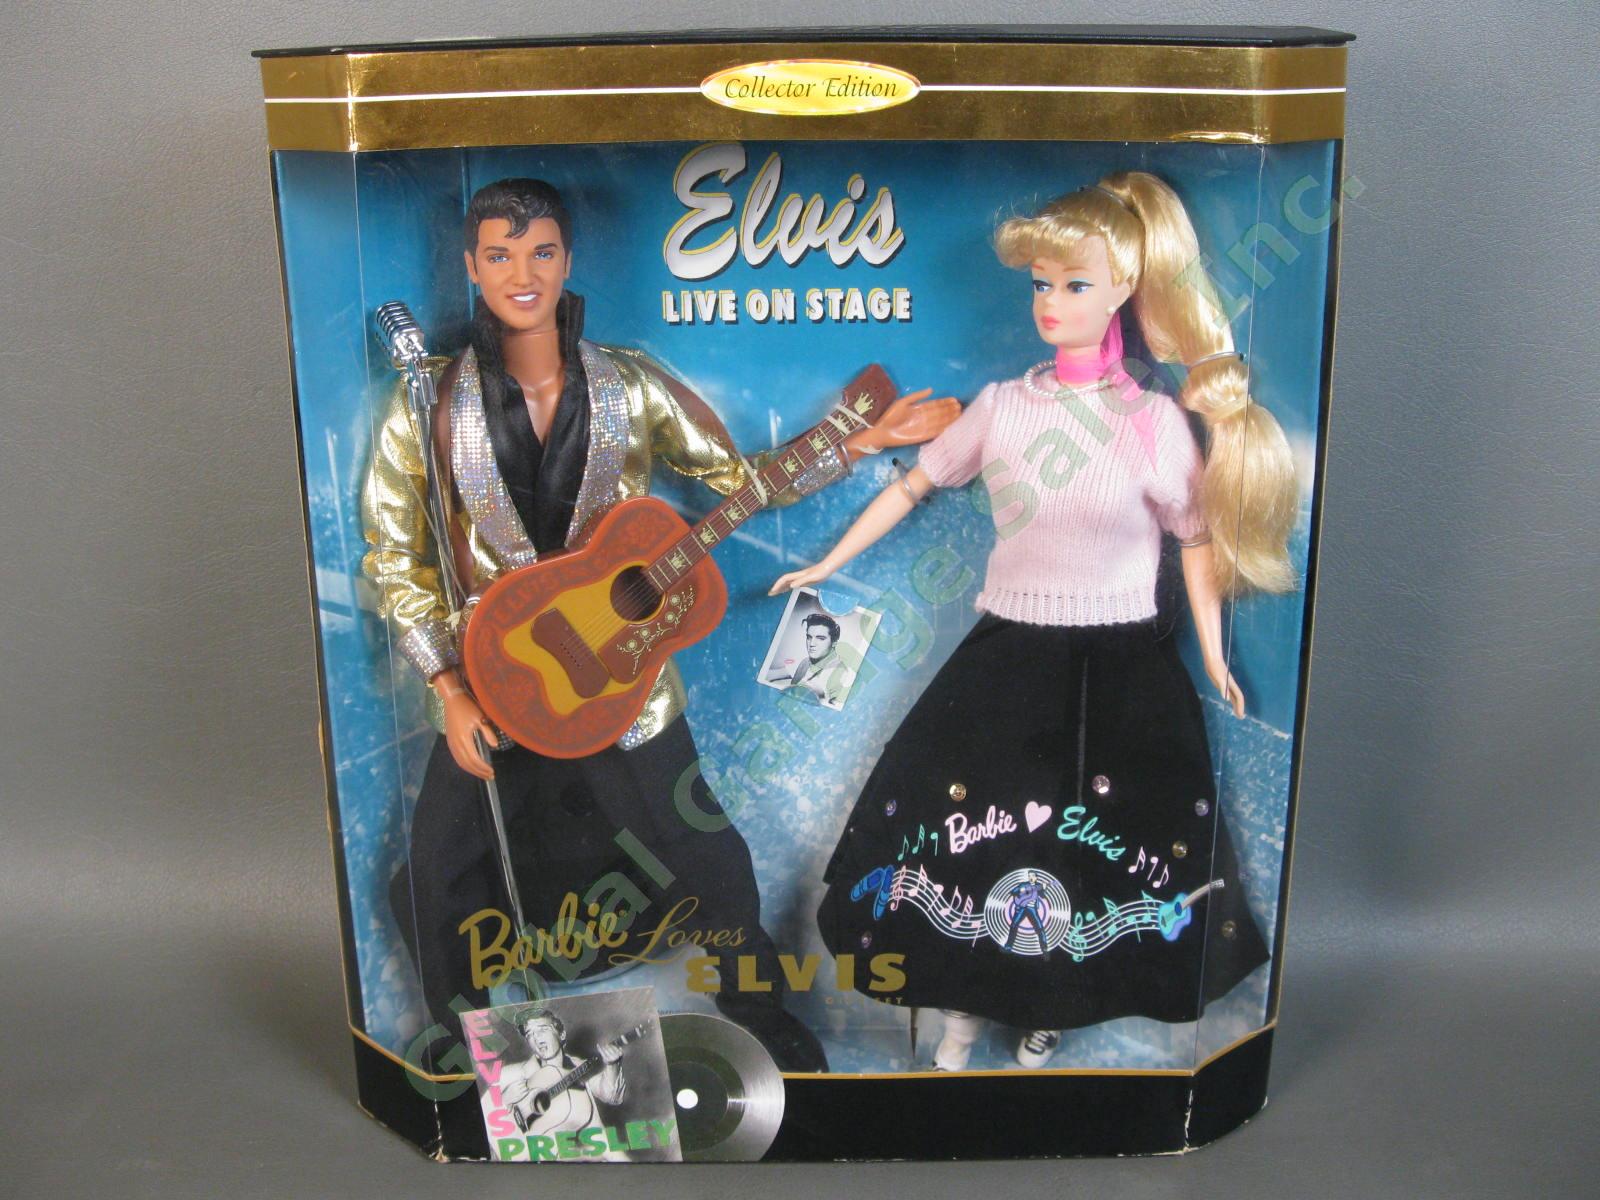 1996 Barbie Loves Elvis Presley Live on Stage 2 Doll Gift Set 17450 1956 Tupelo